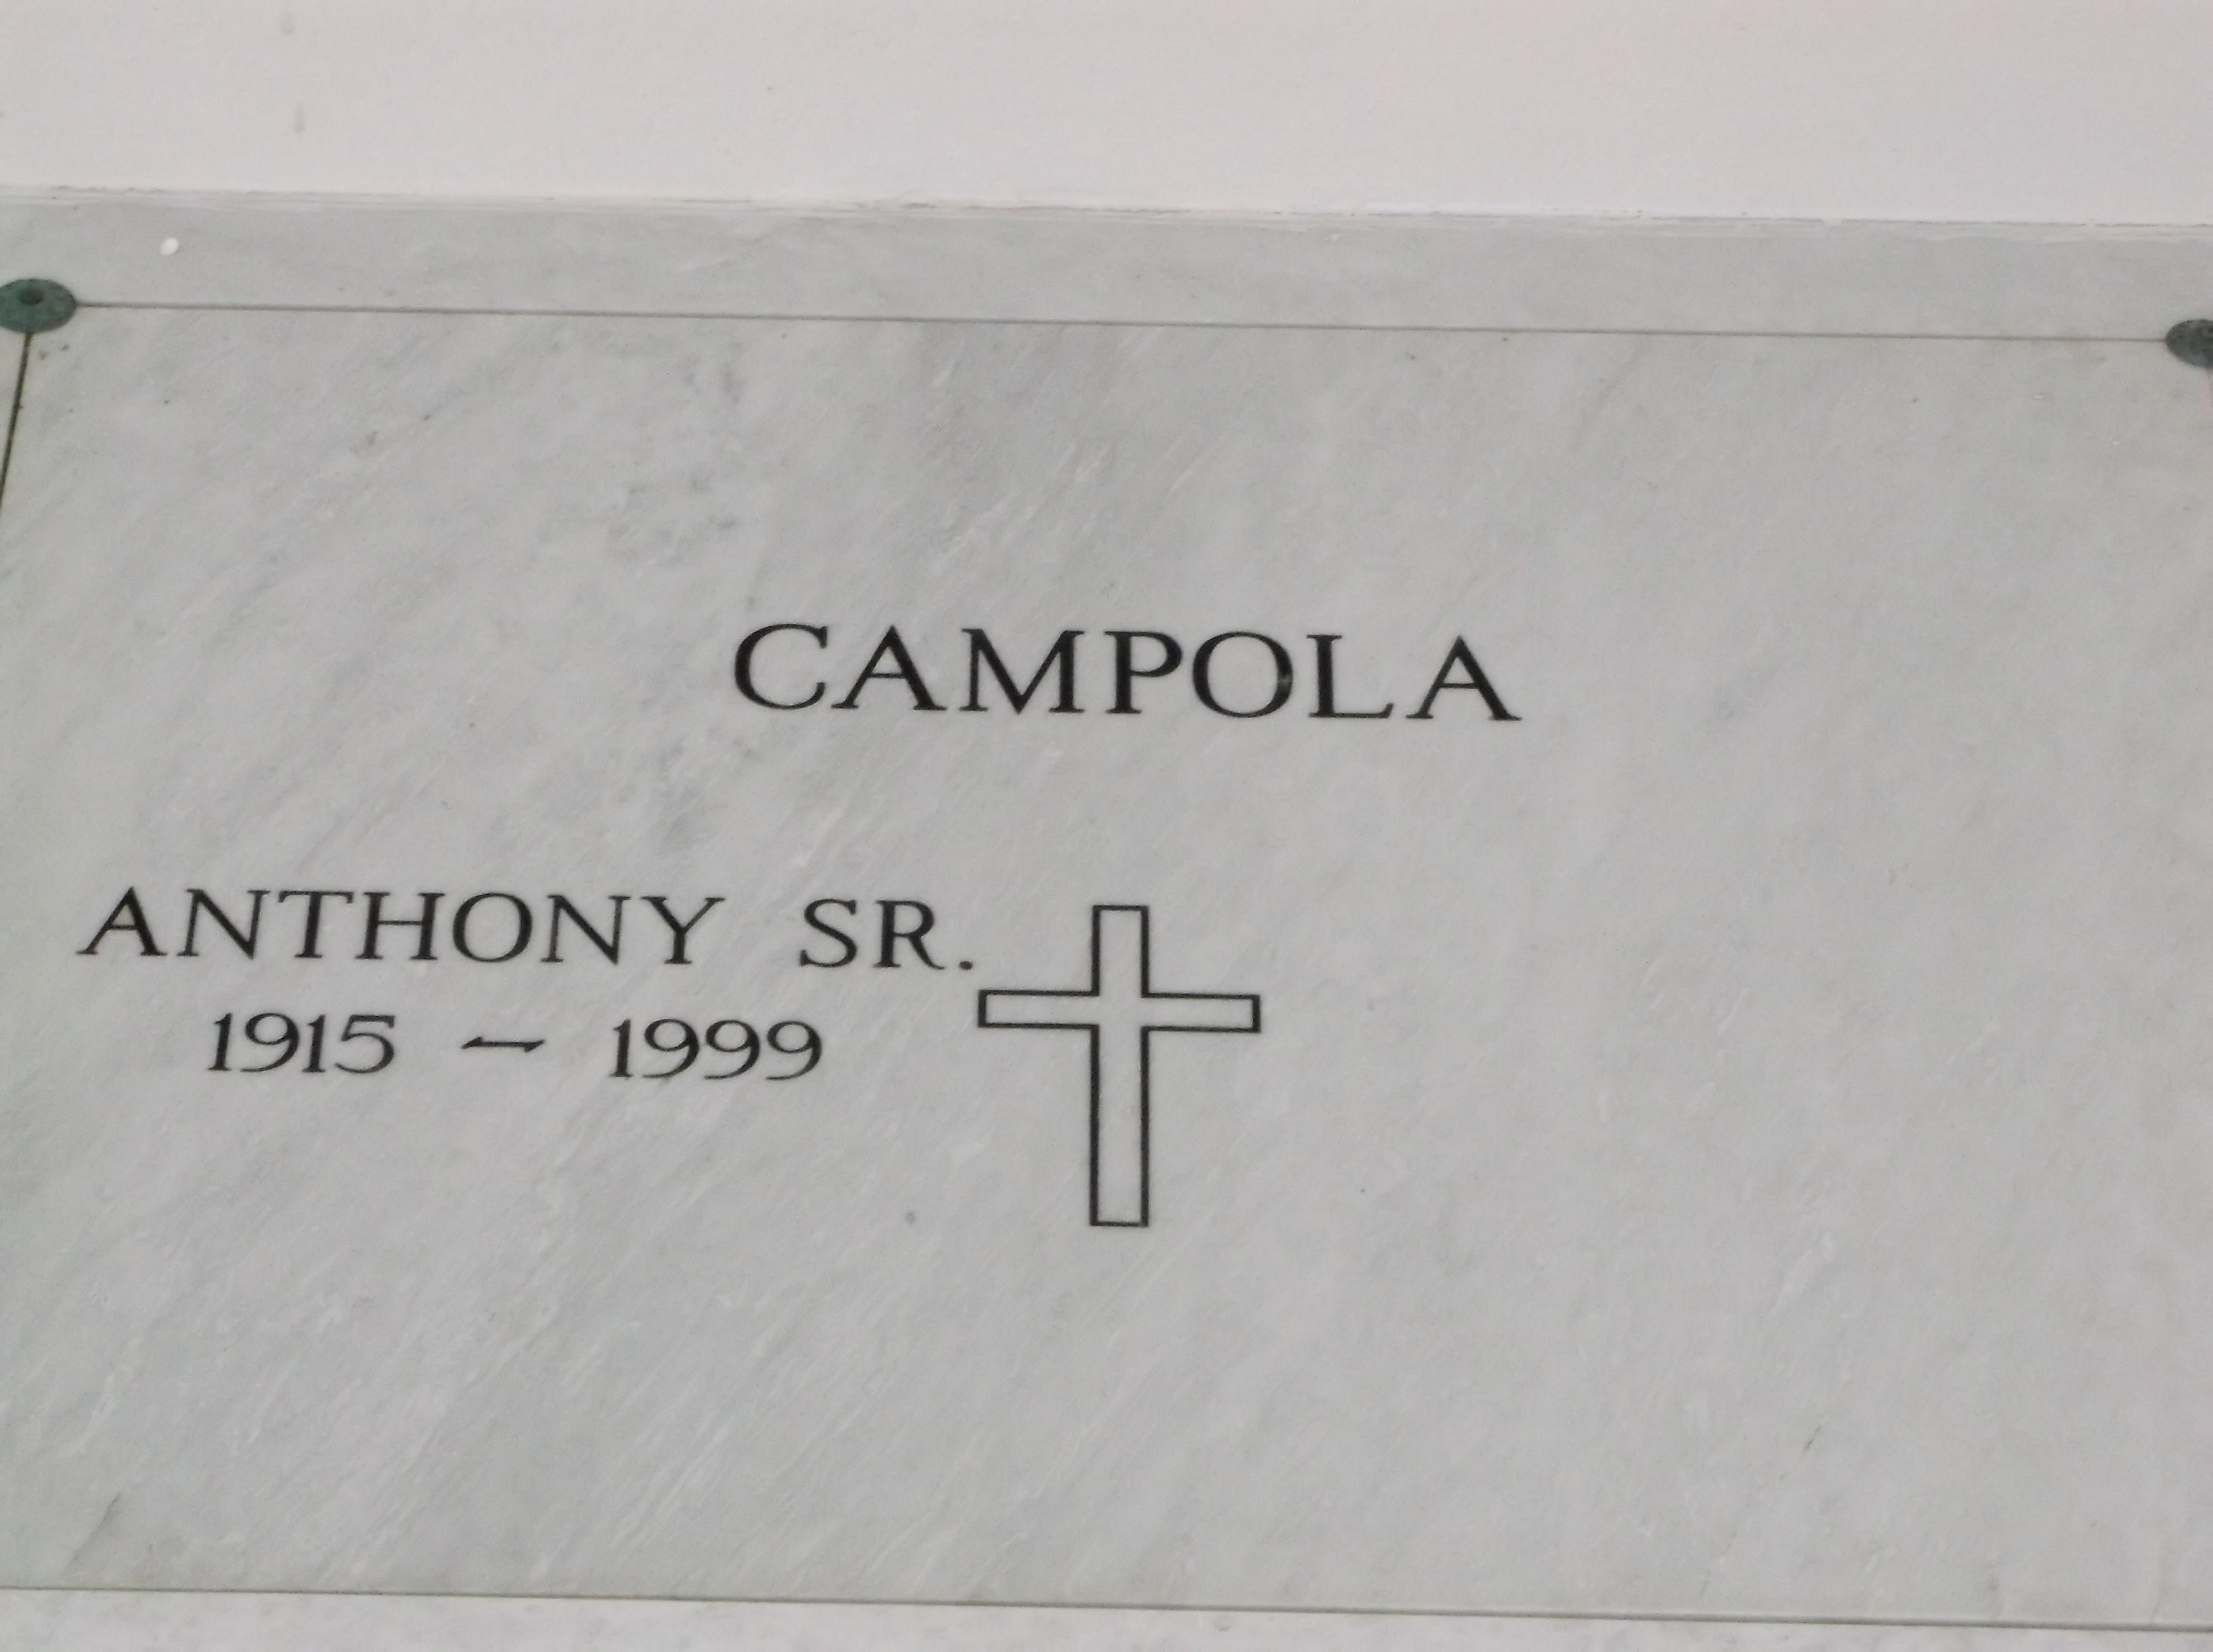 Anthony Campola, Sr